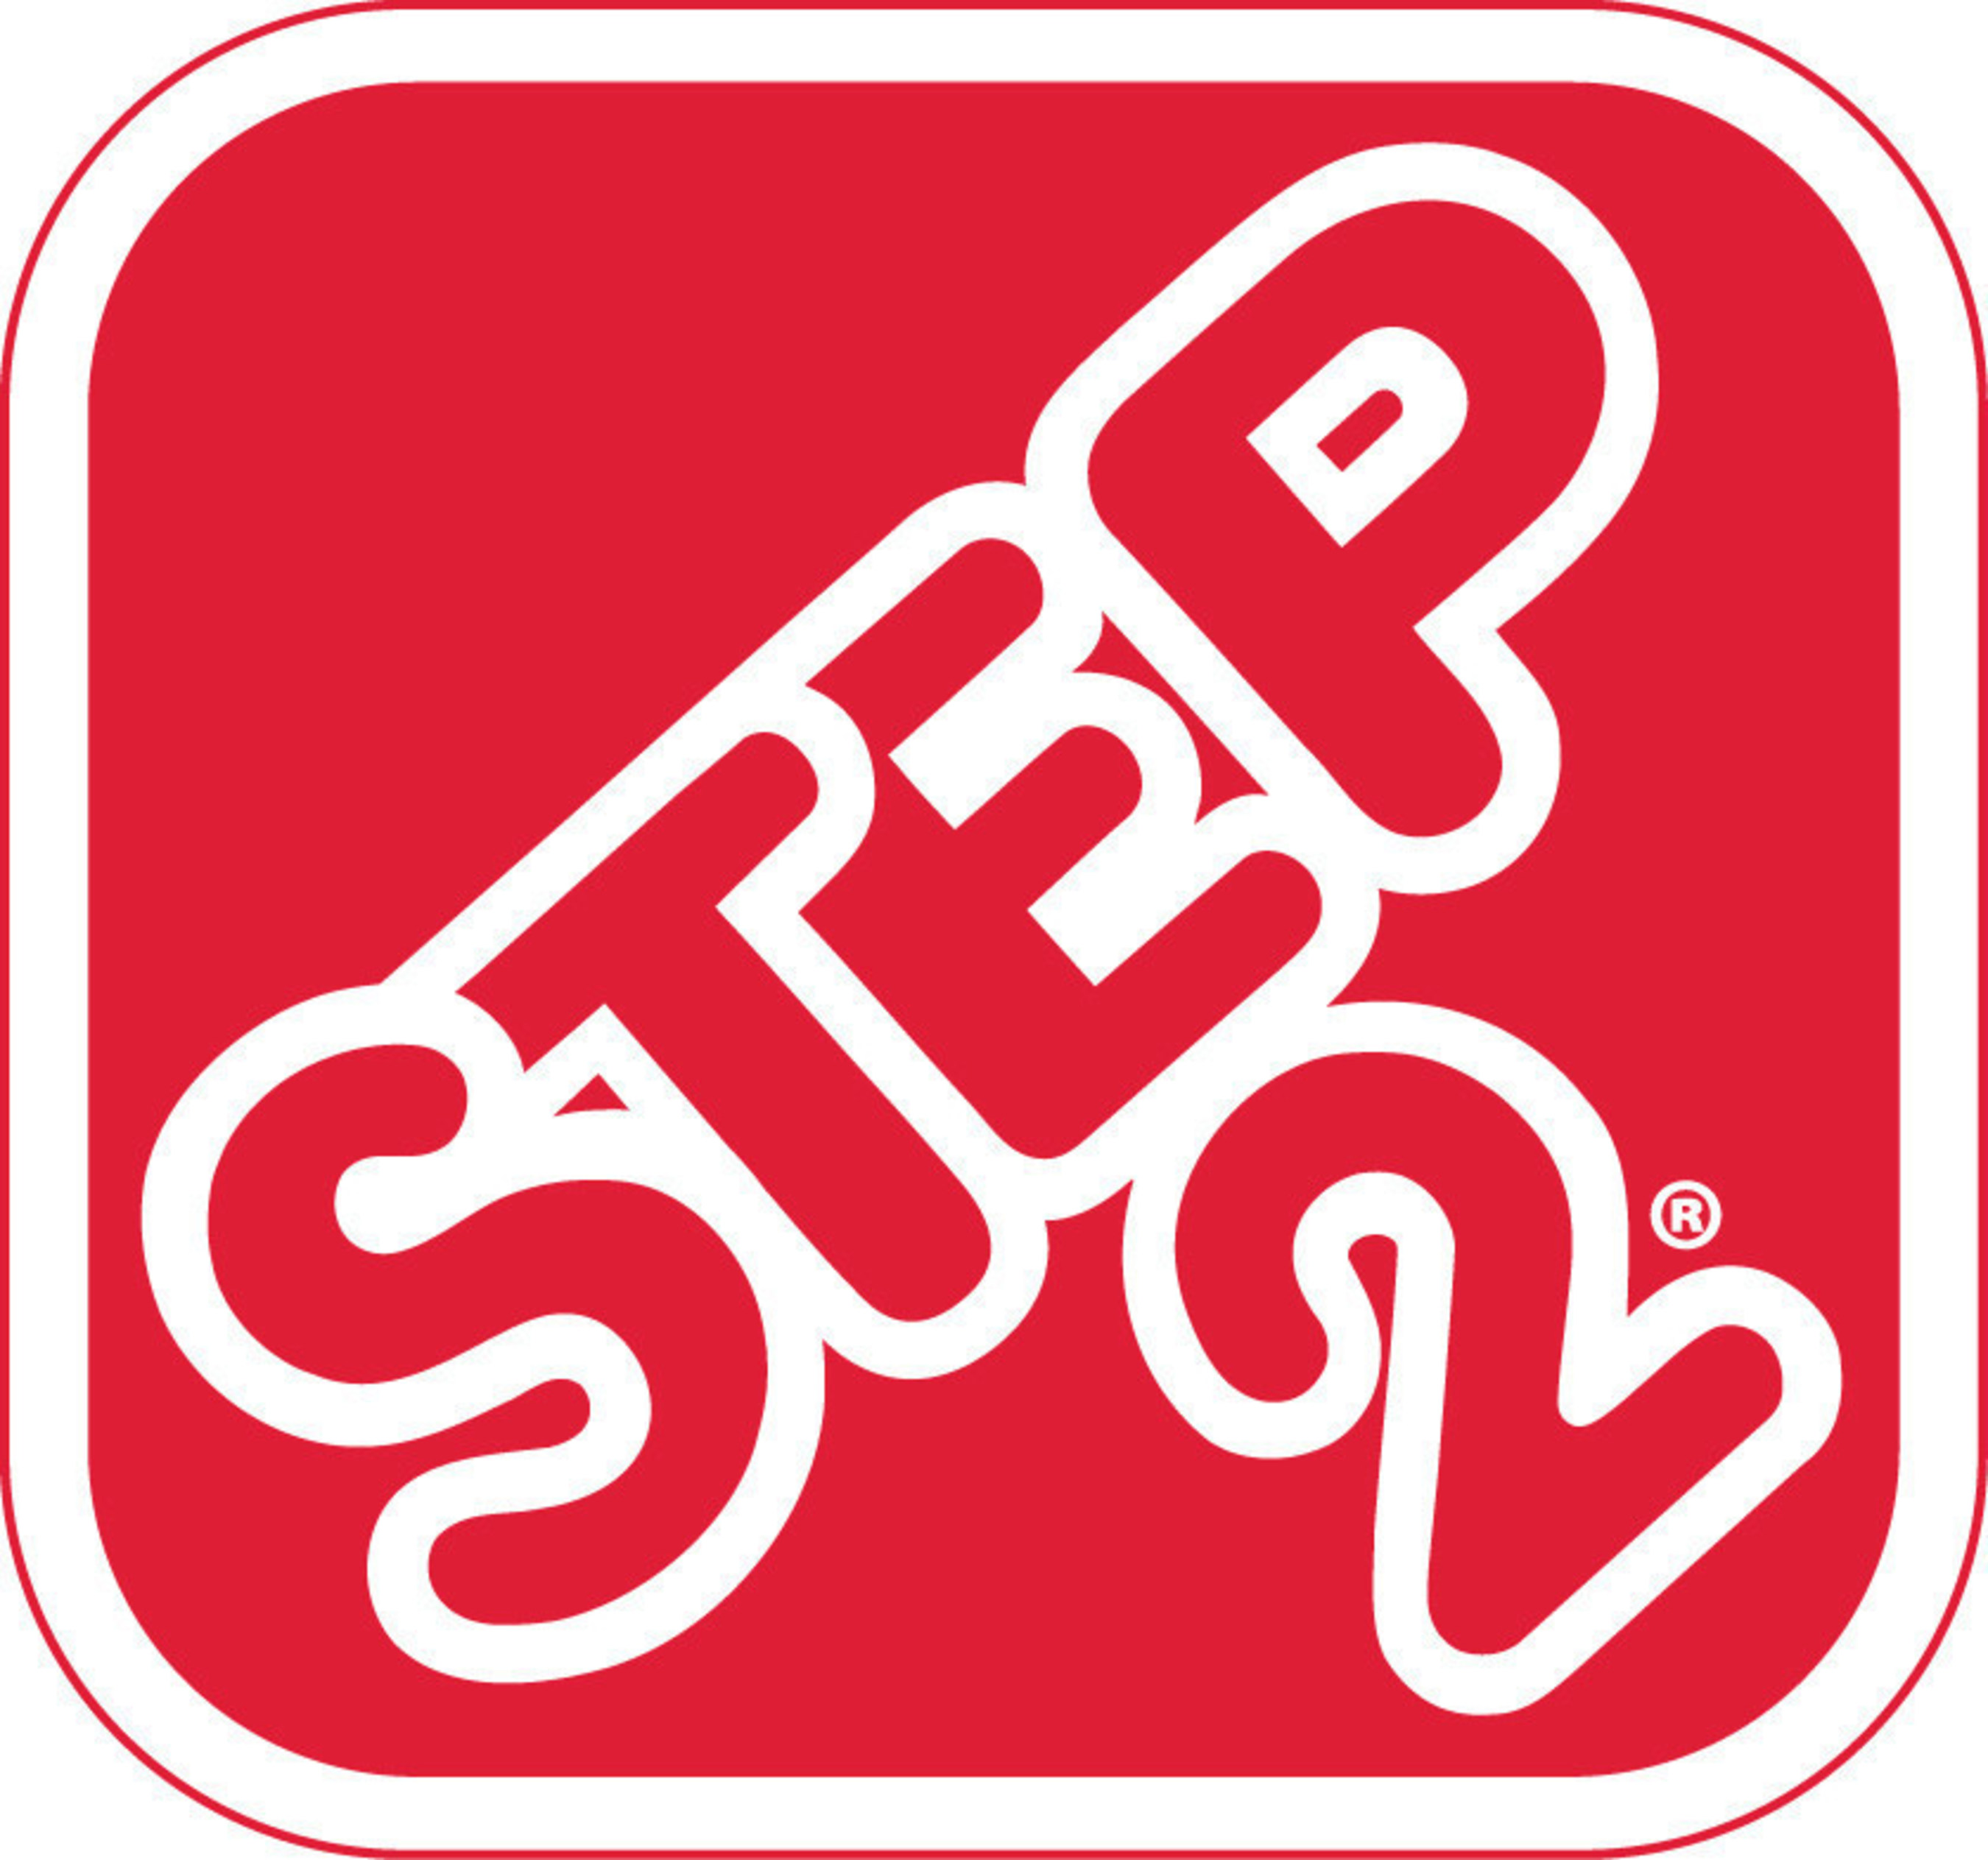 The Step2 Company, LLC